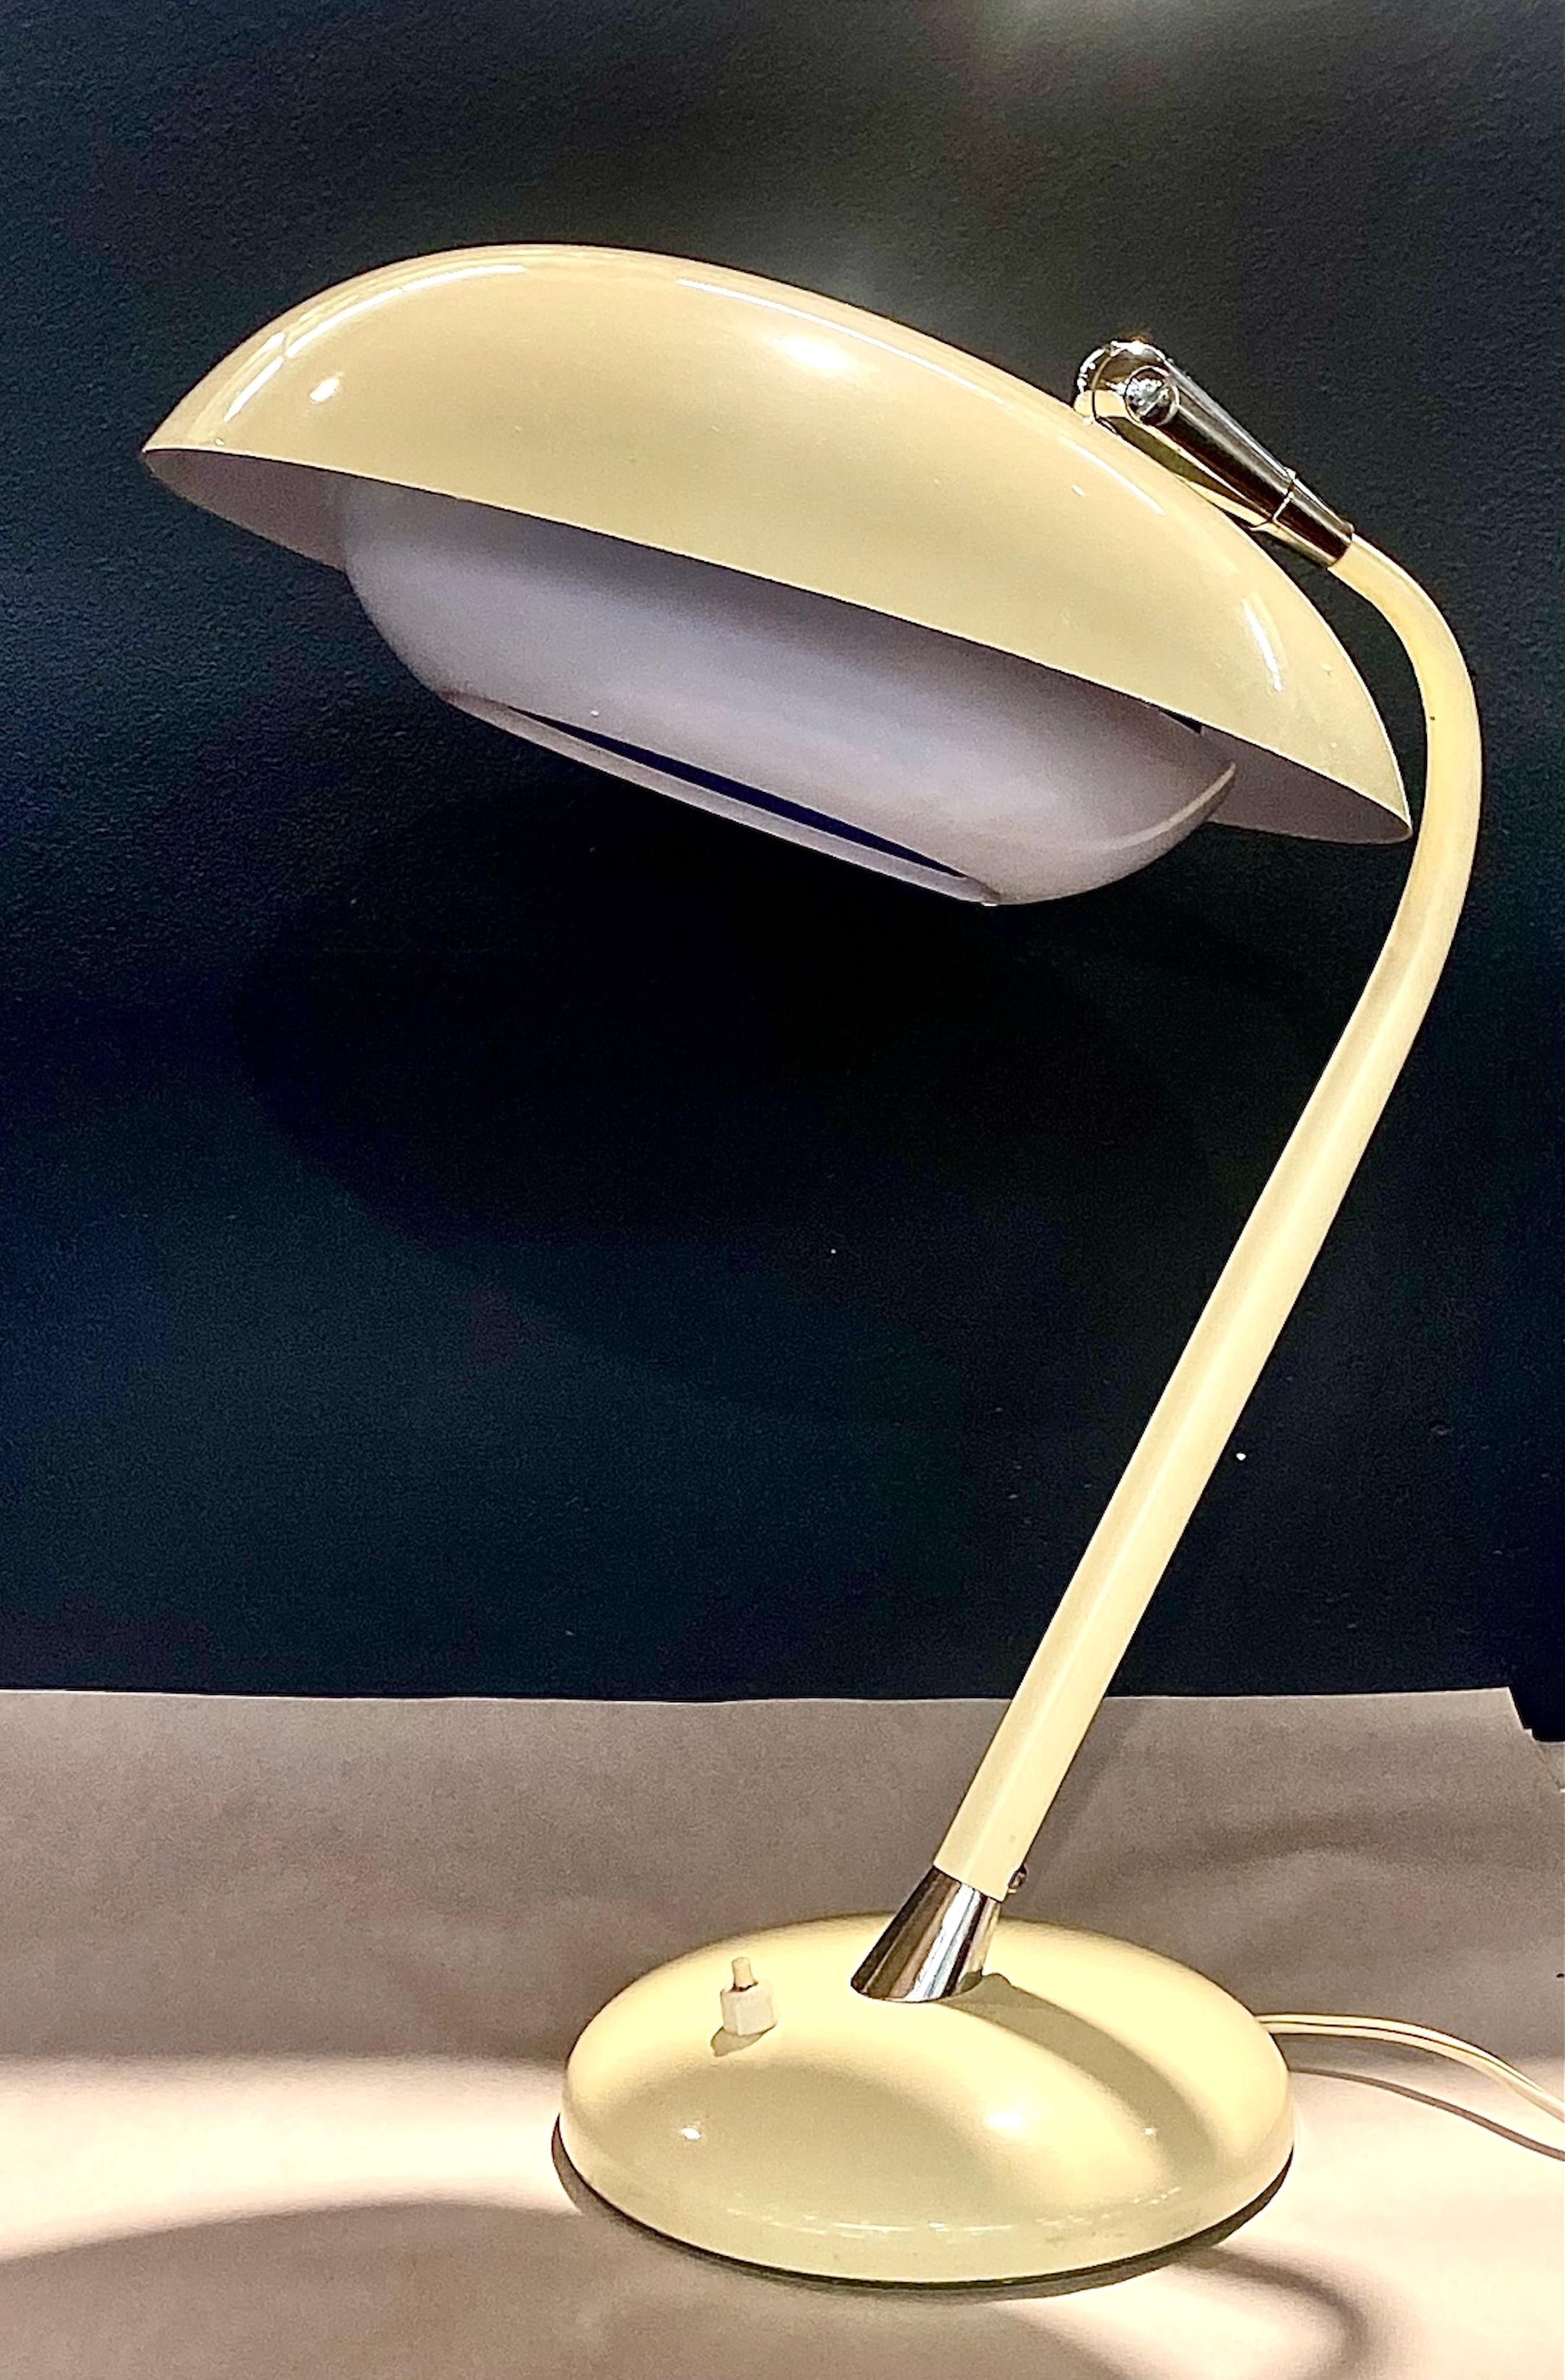 Lampe de bureau italienne des années 1950 en ivoire émaillé. D'origine, difuseur émaillé blanc sous abat-jour.
une prise standard, angle d'ombrage réglable.